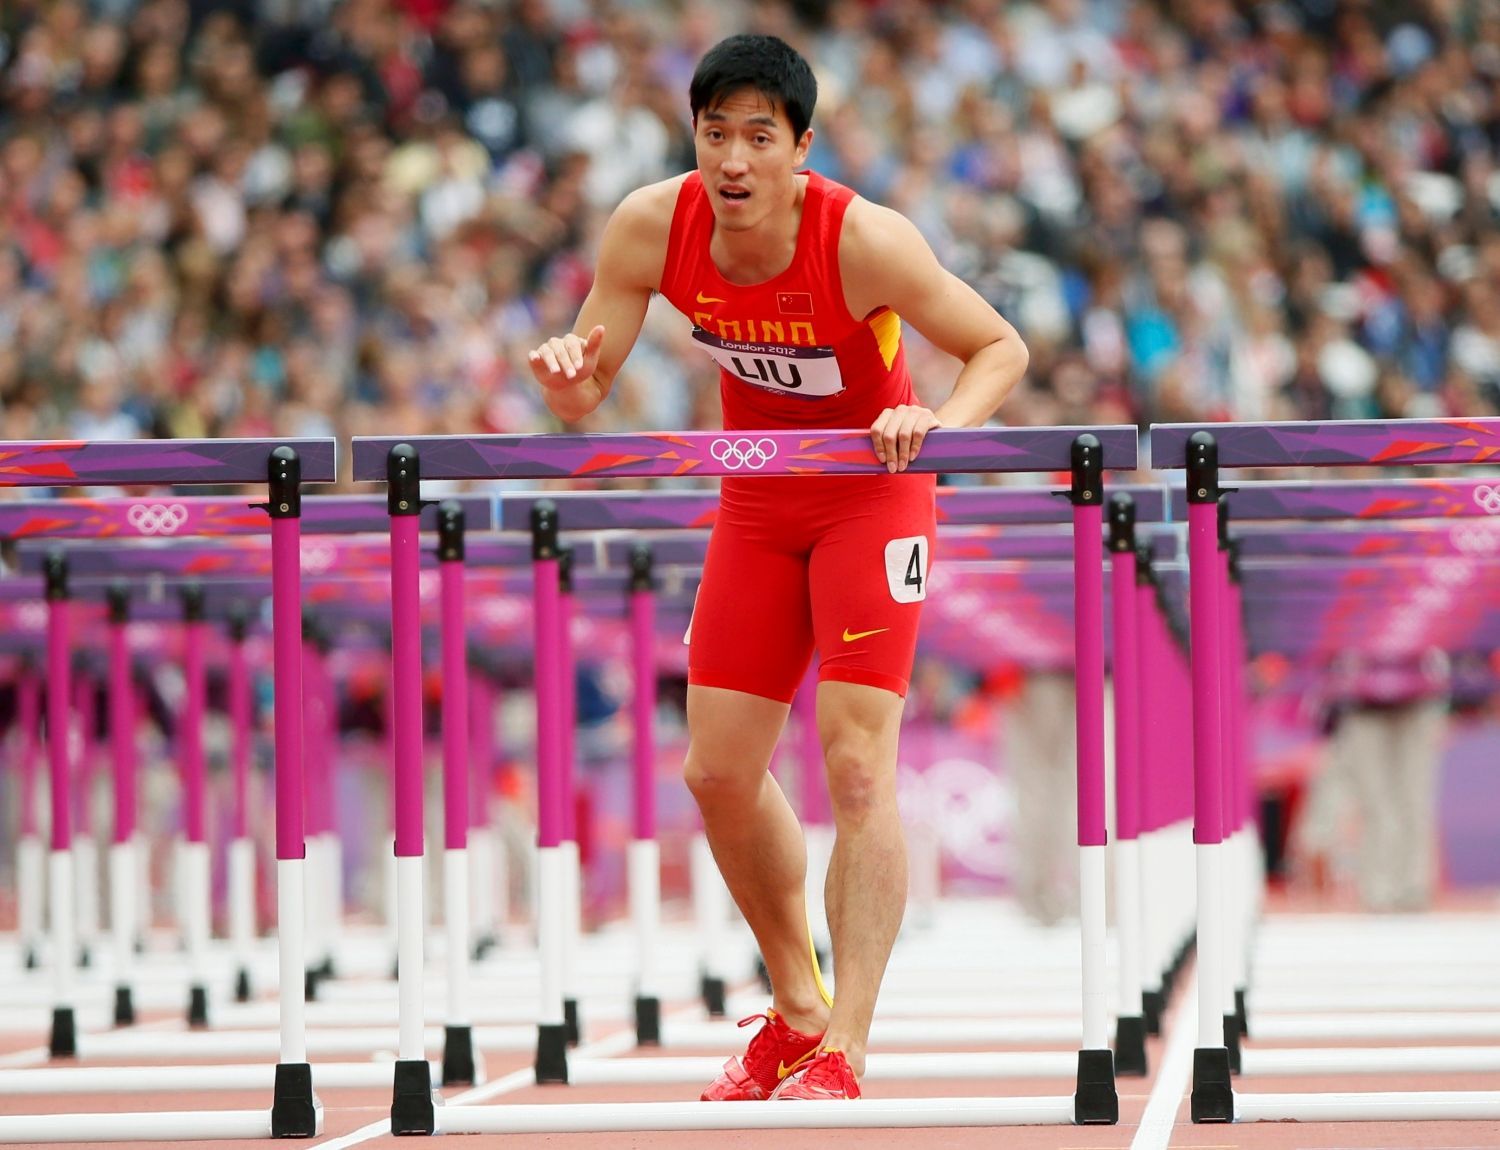 Čínský atlet Xiang Liu po pádu v disciplíně 110 metrů překážek na OH 2012 v Londýně.